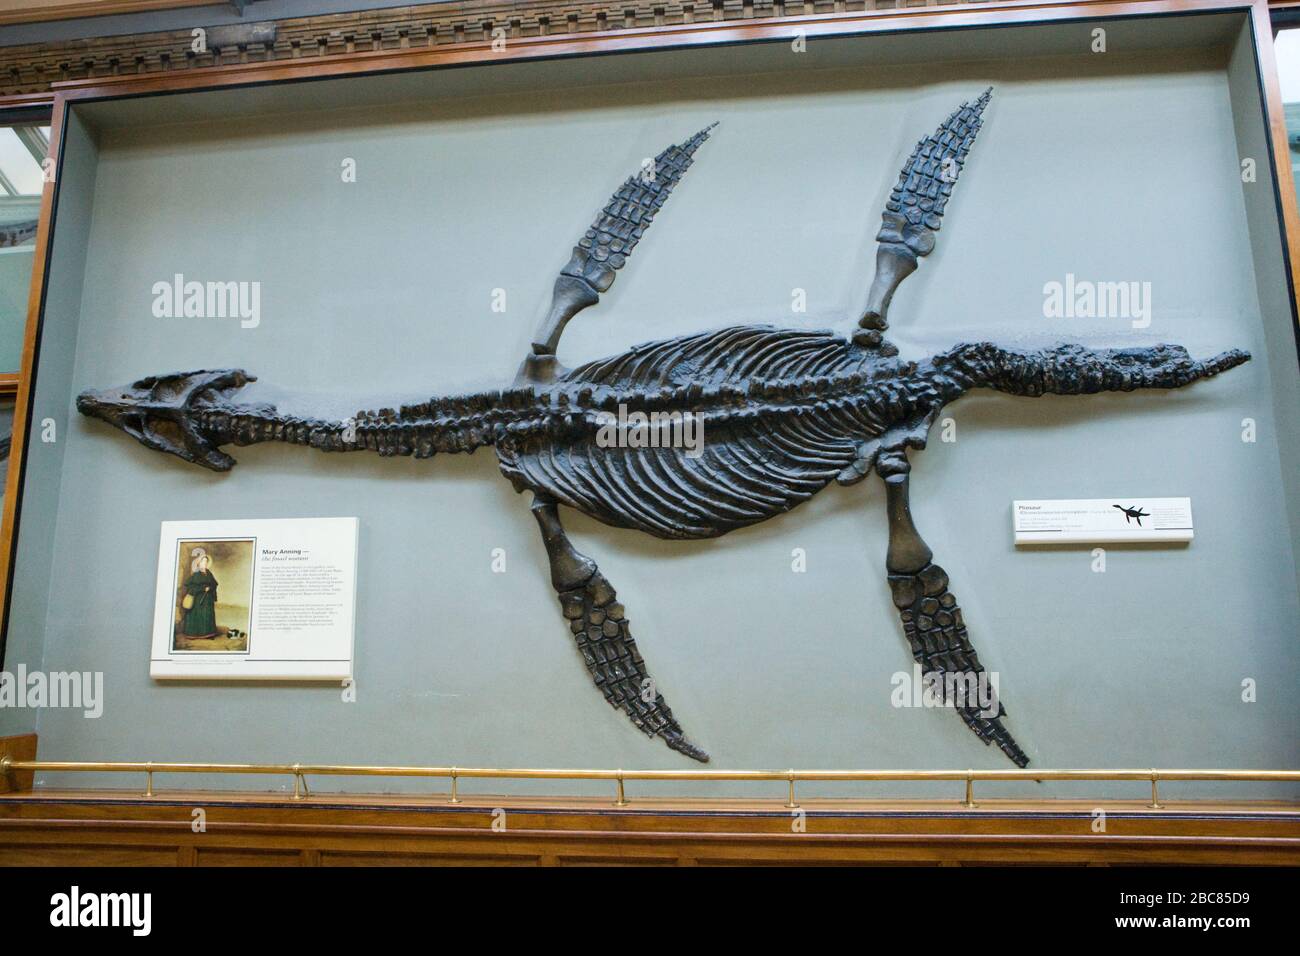 Pliosaur - Rhomaleosaurus cramptoni, un tipo de Plesiosaurio, en el Museo de Historia Natural de Londres. También foto de Mary Anning, coleccionista de fósiles. Foto de stock